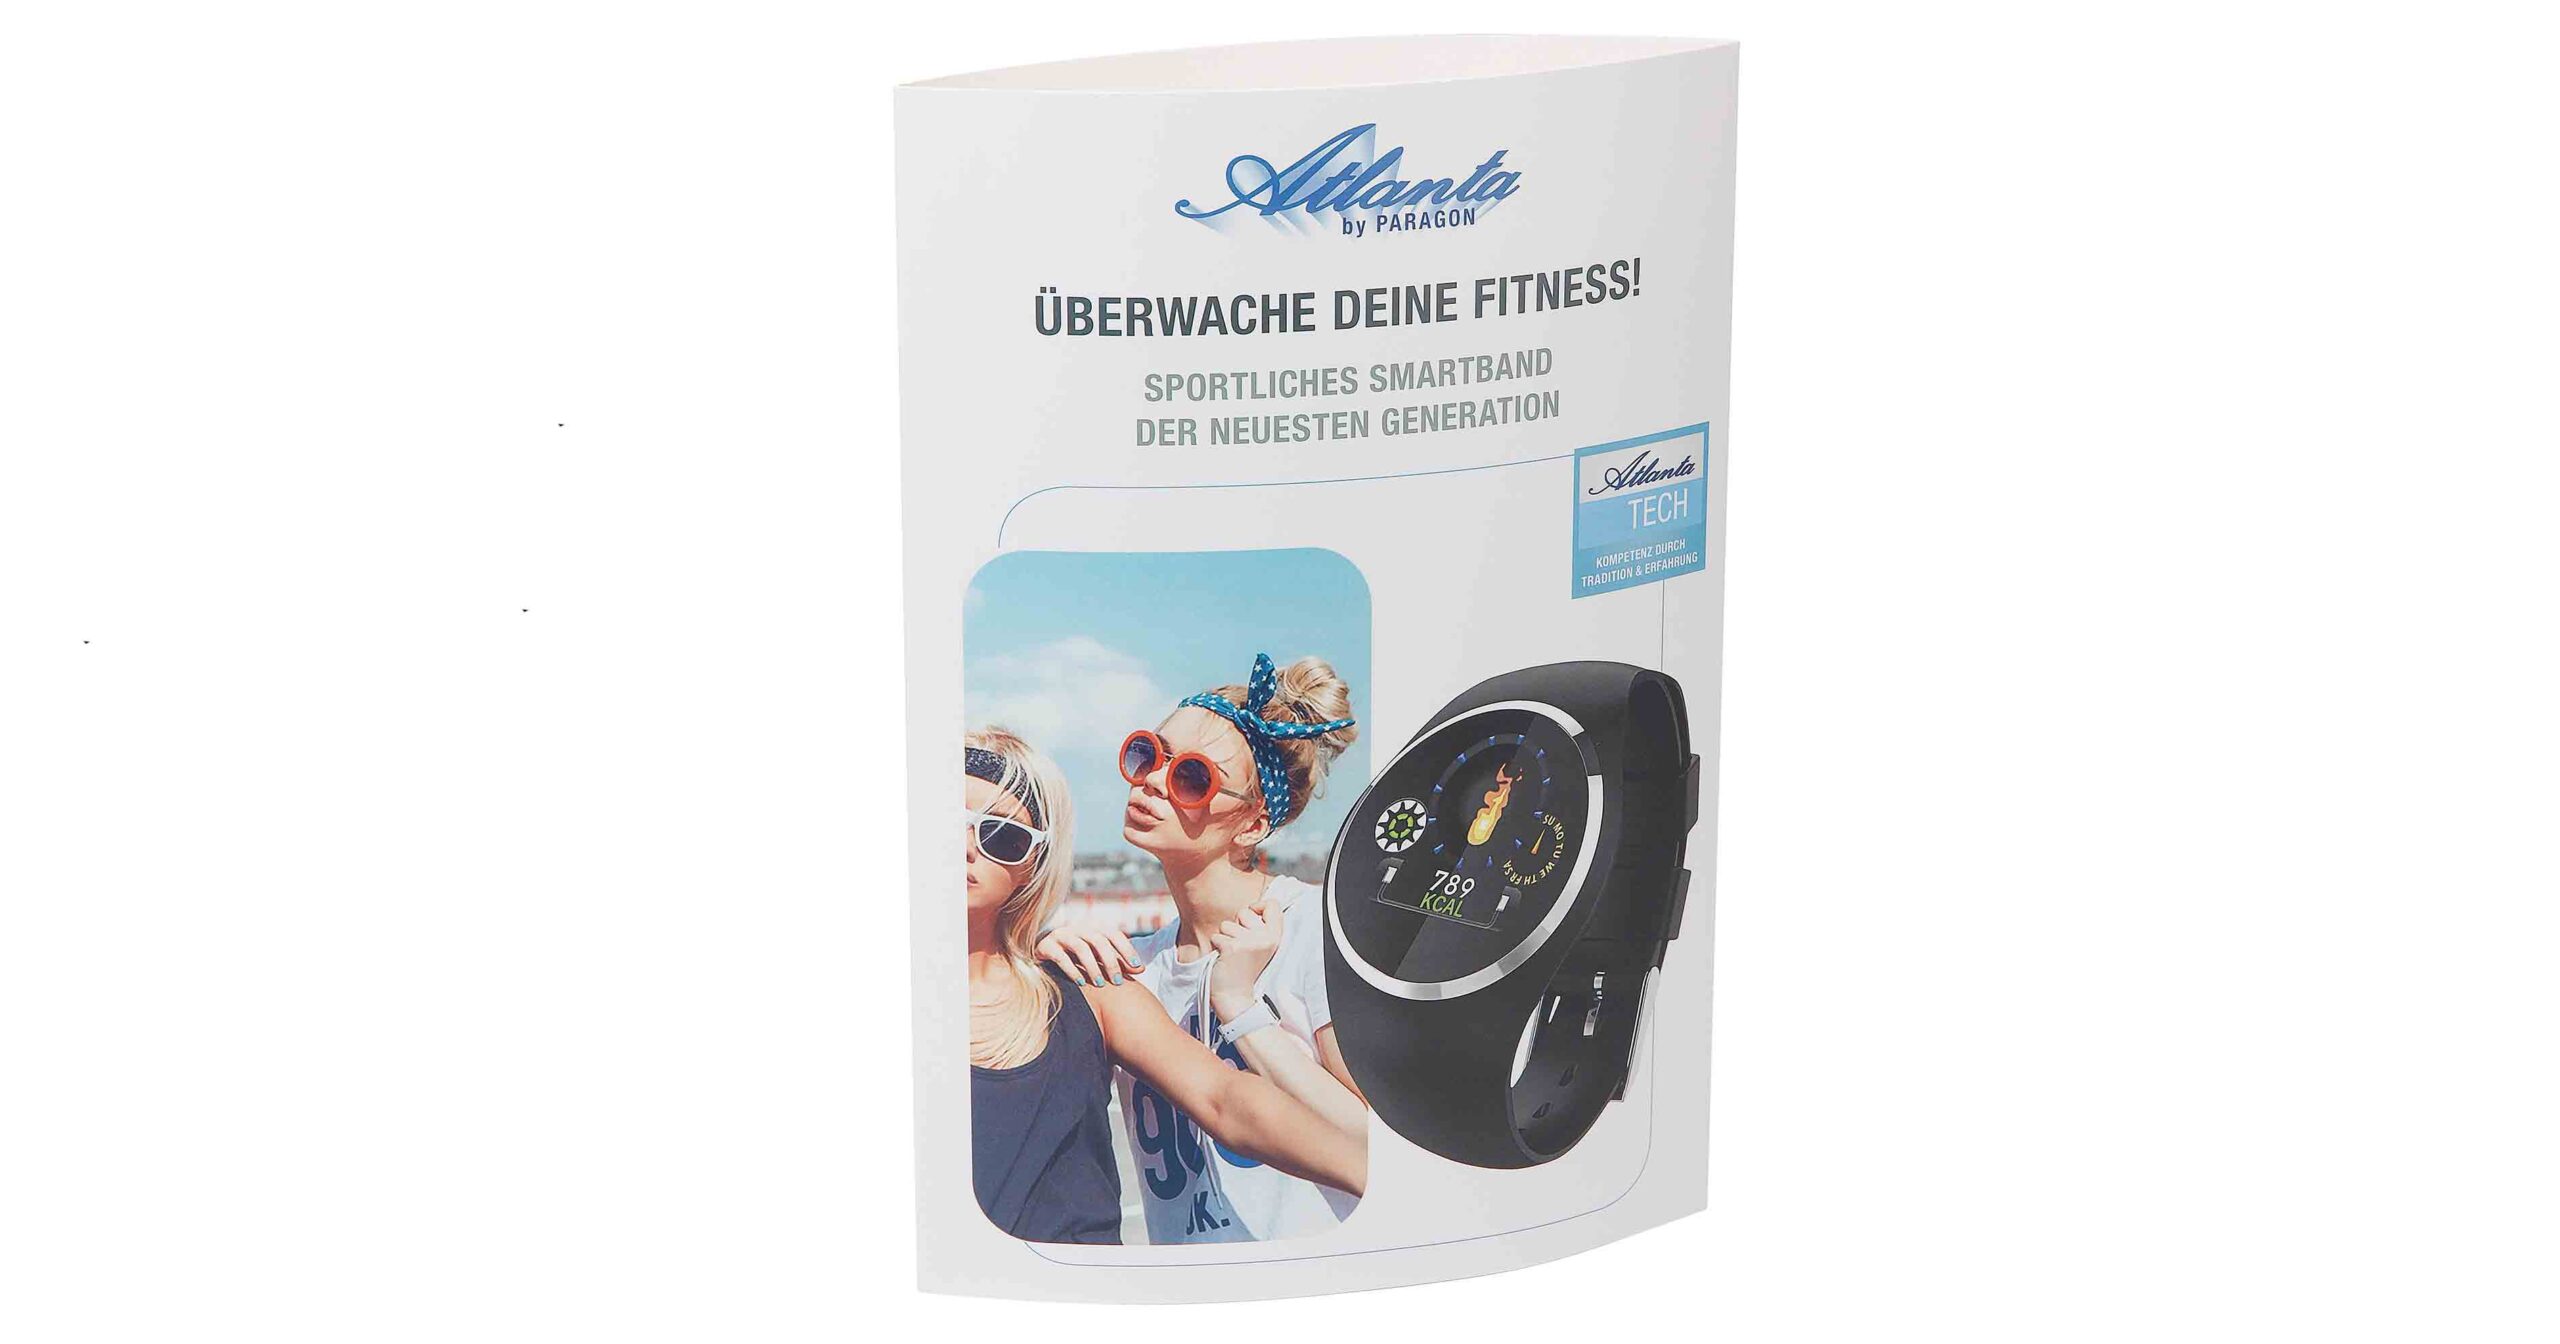 Cool und lässig: Das Display das sportliche Smartband, mit dem man seine Fitness überwachen kann.